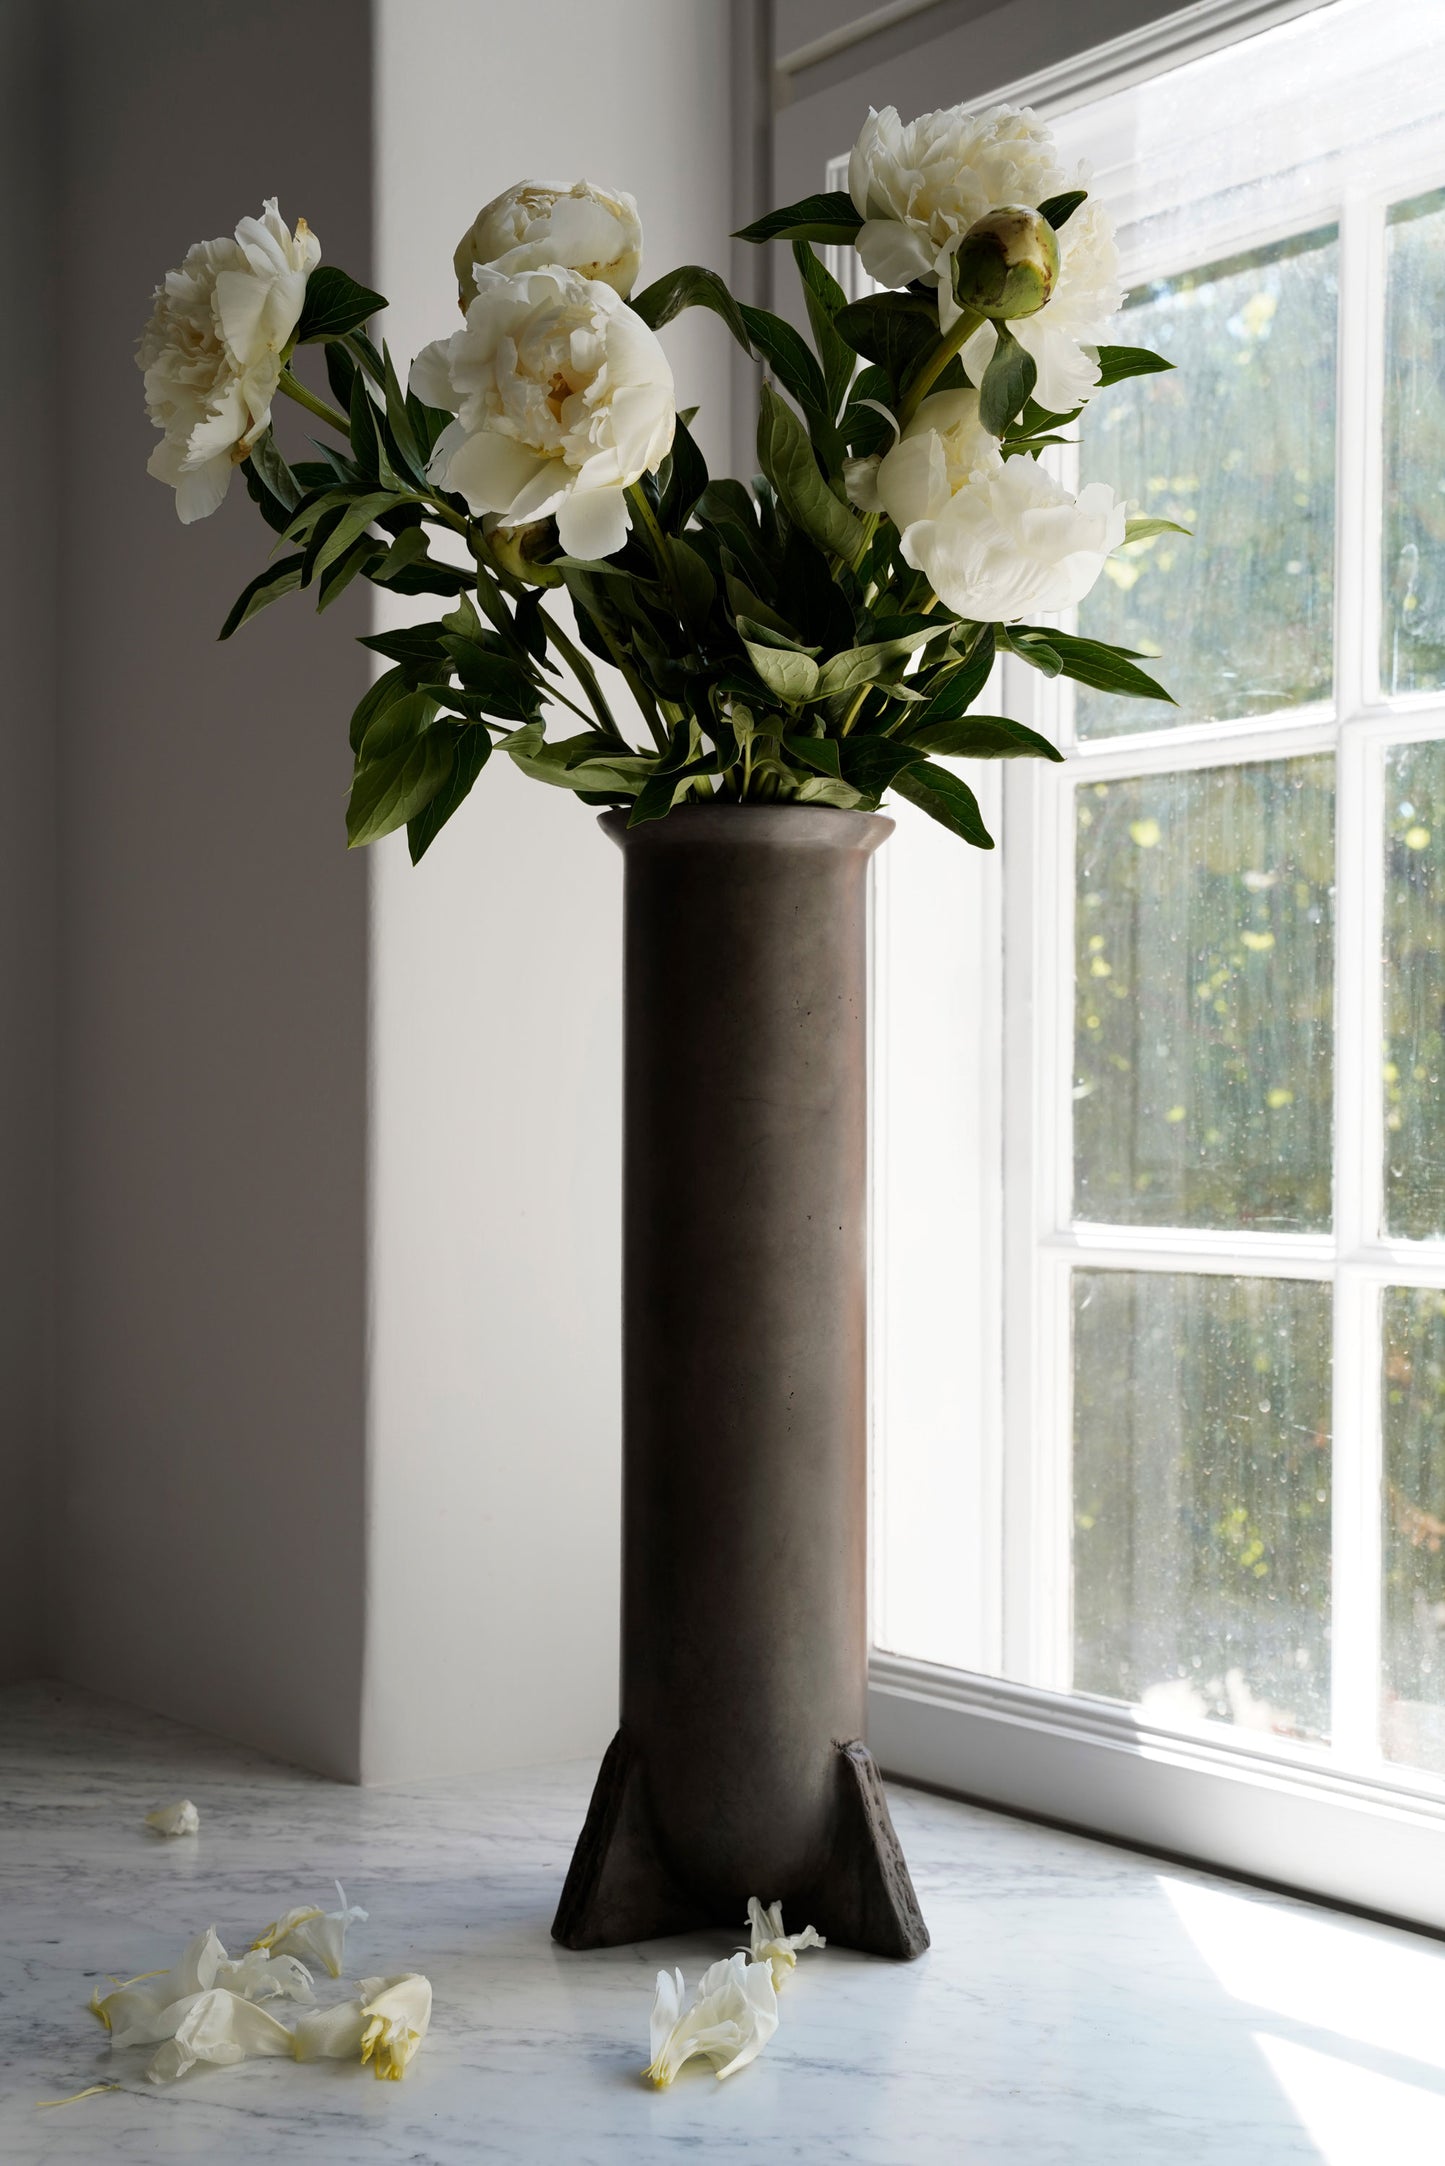 Urnette Vase by Rick Owens